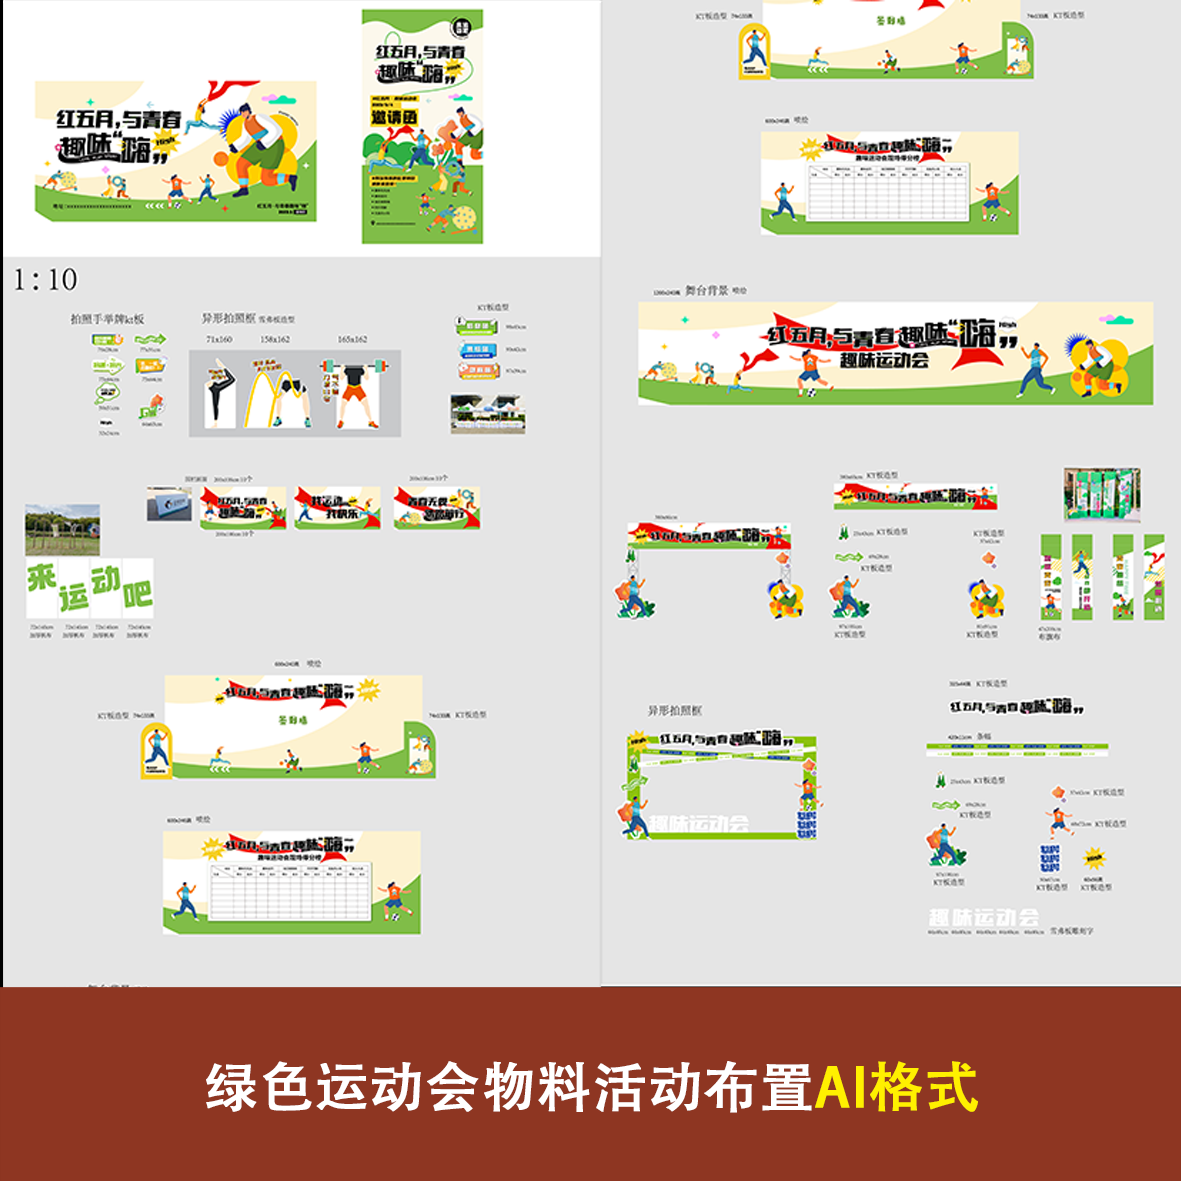 绿色春季运动会物料kt板背景广告宣传制作设计素材文件ai格式合影